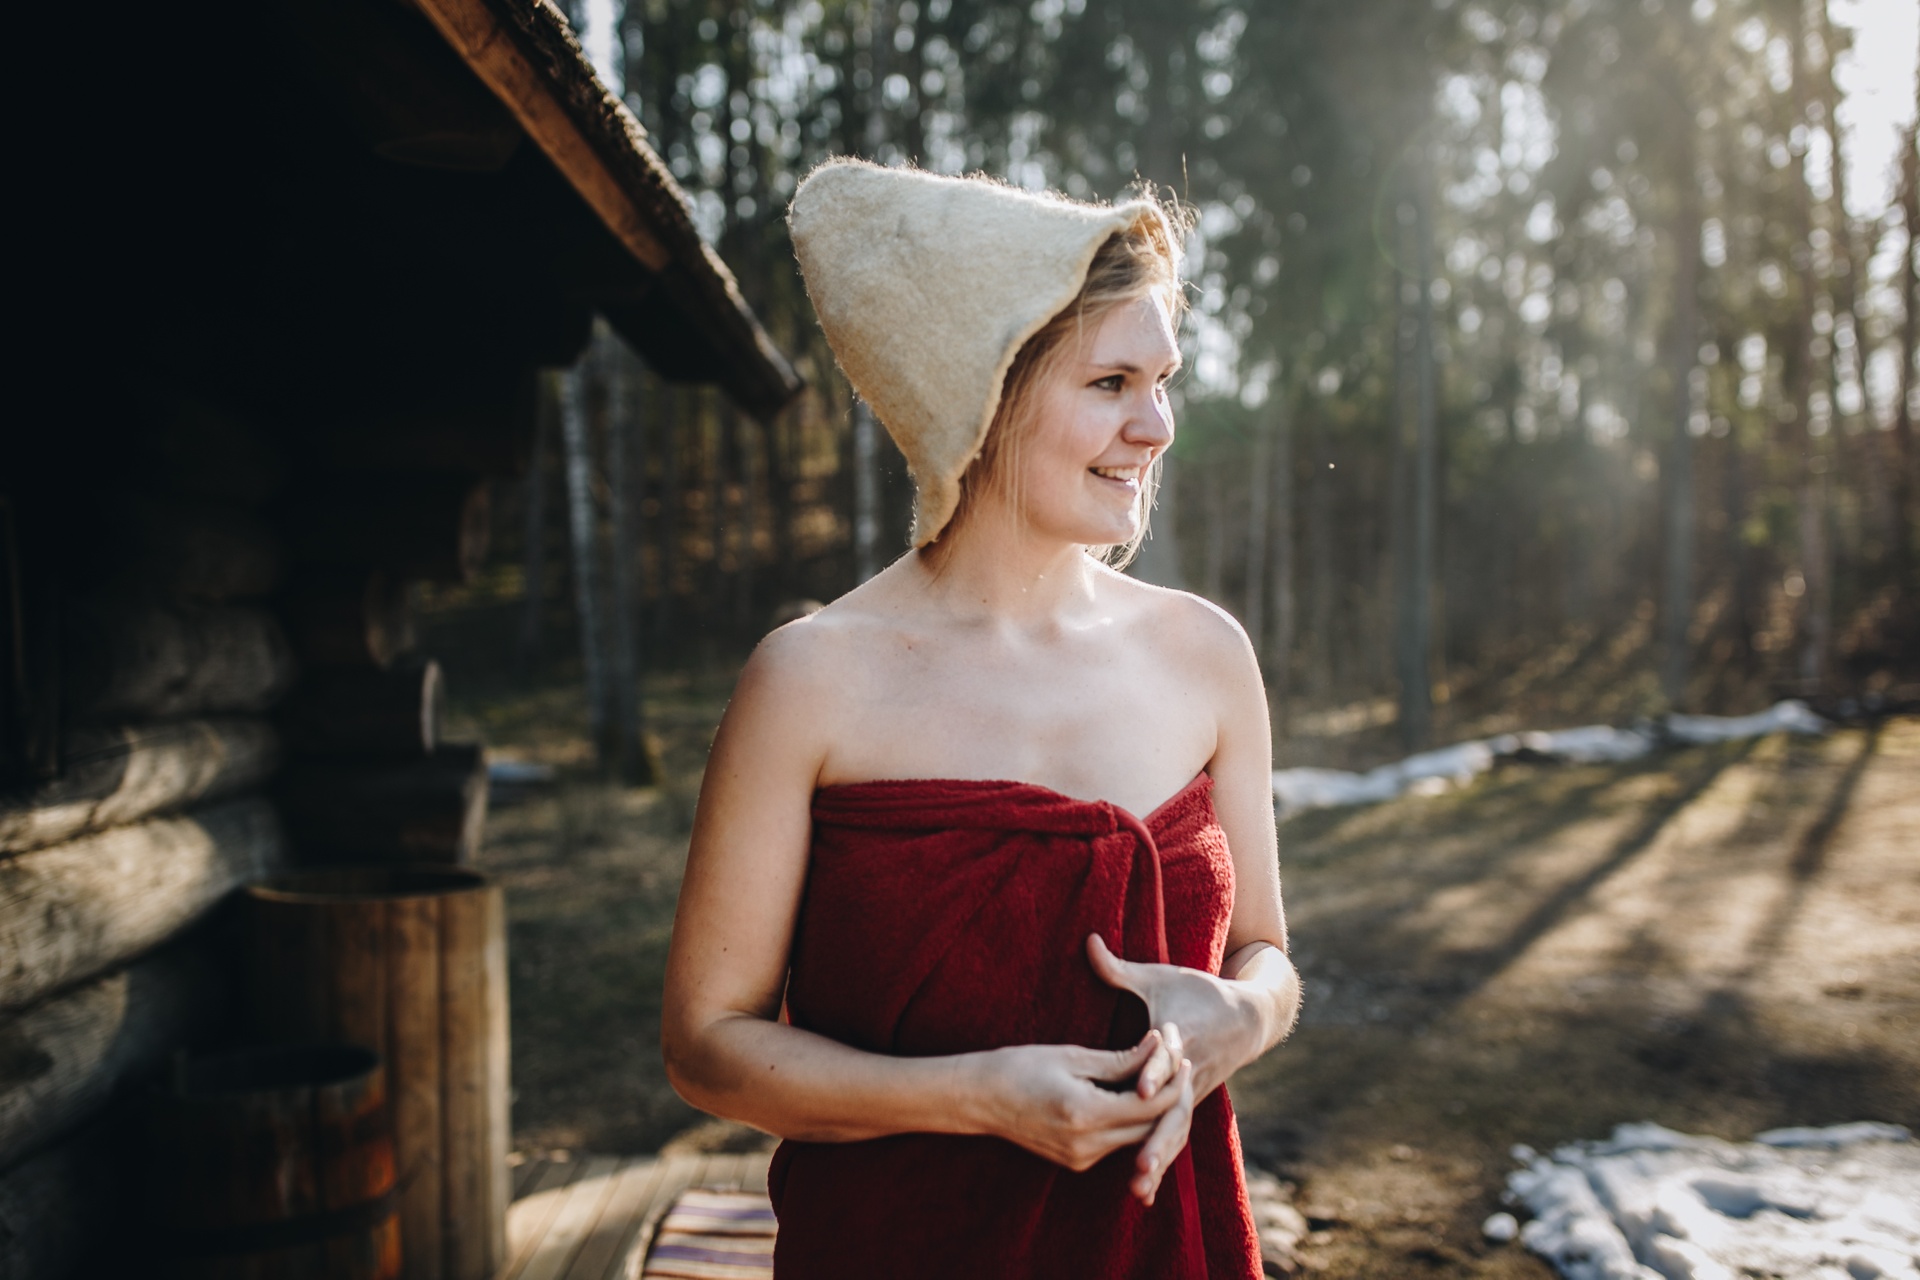 Woman with a felt sauna hat and towel outside a smoke sauna